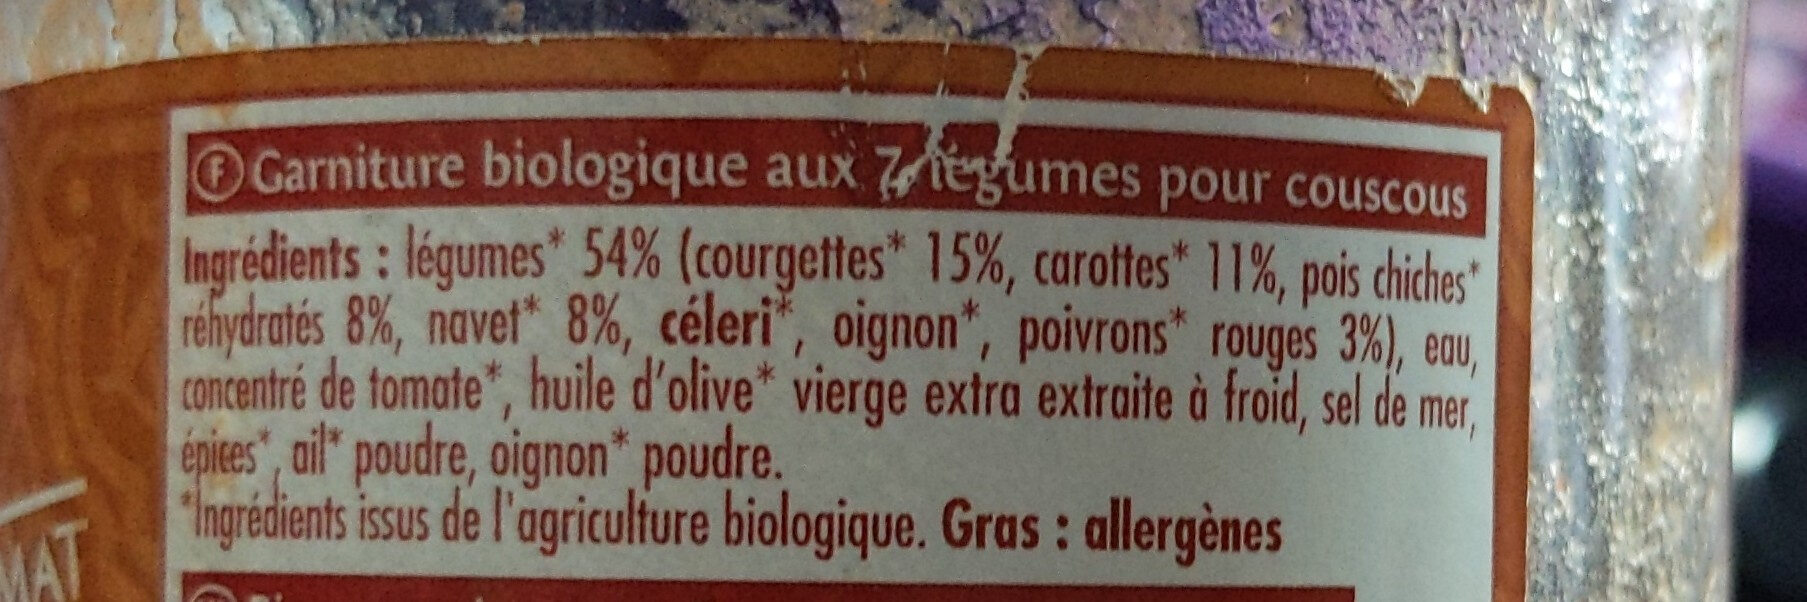 Couscous aux 7 légumes - Ingredienti - fr